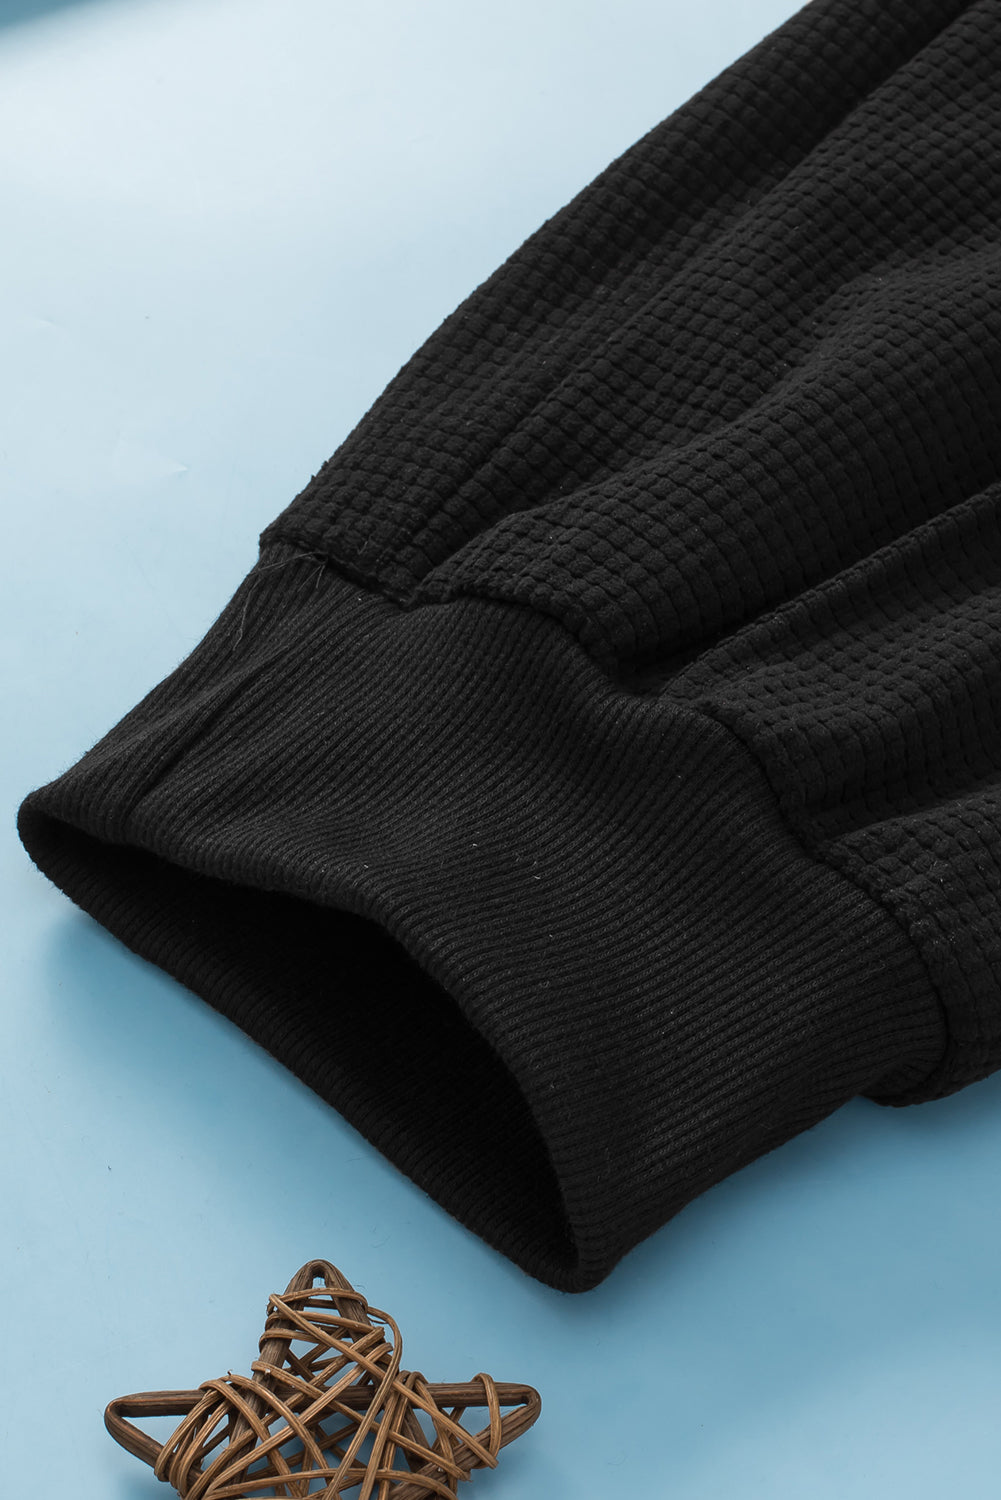 Crne jogger hlače s uzicom i teksturiranim šavovima veće veličine